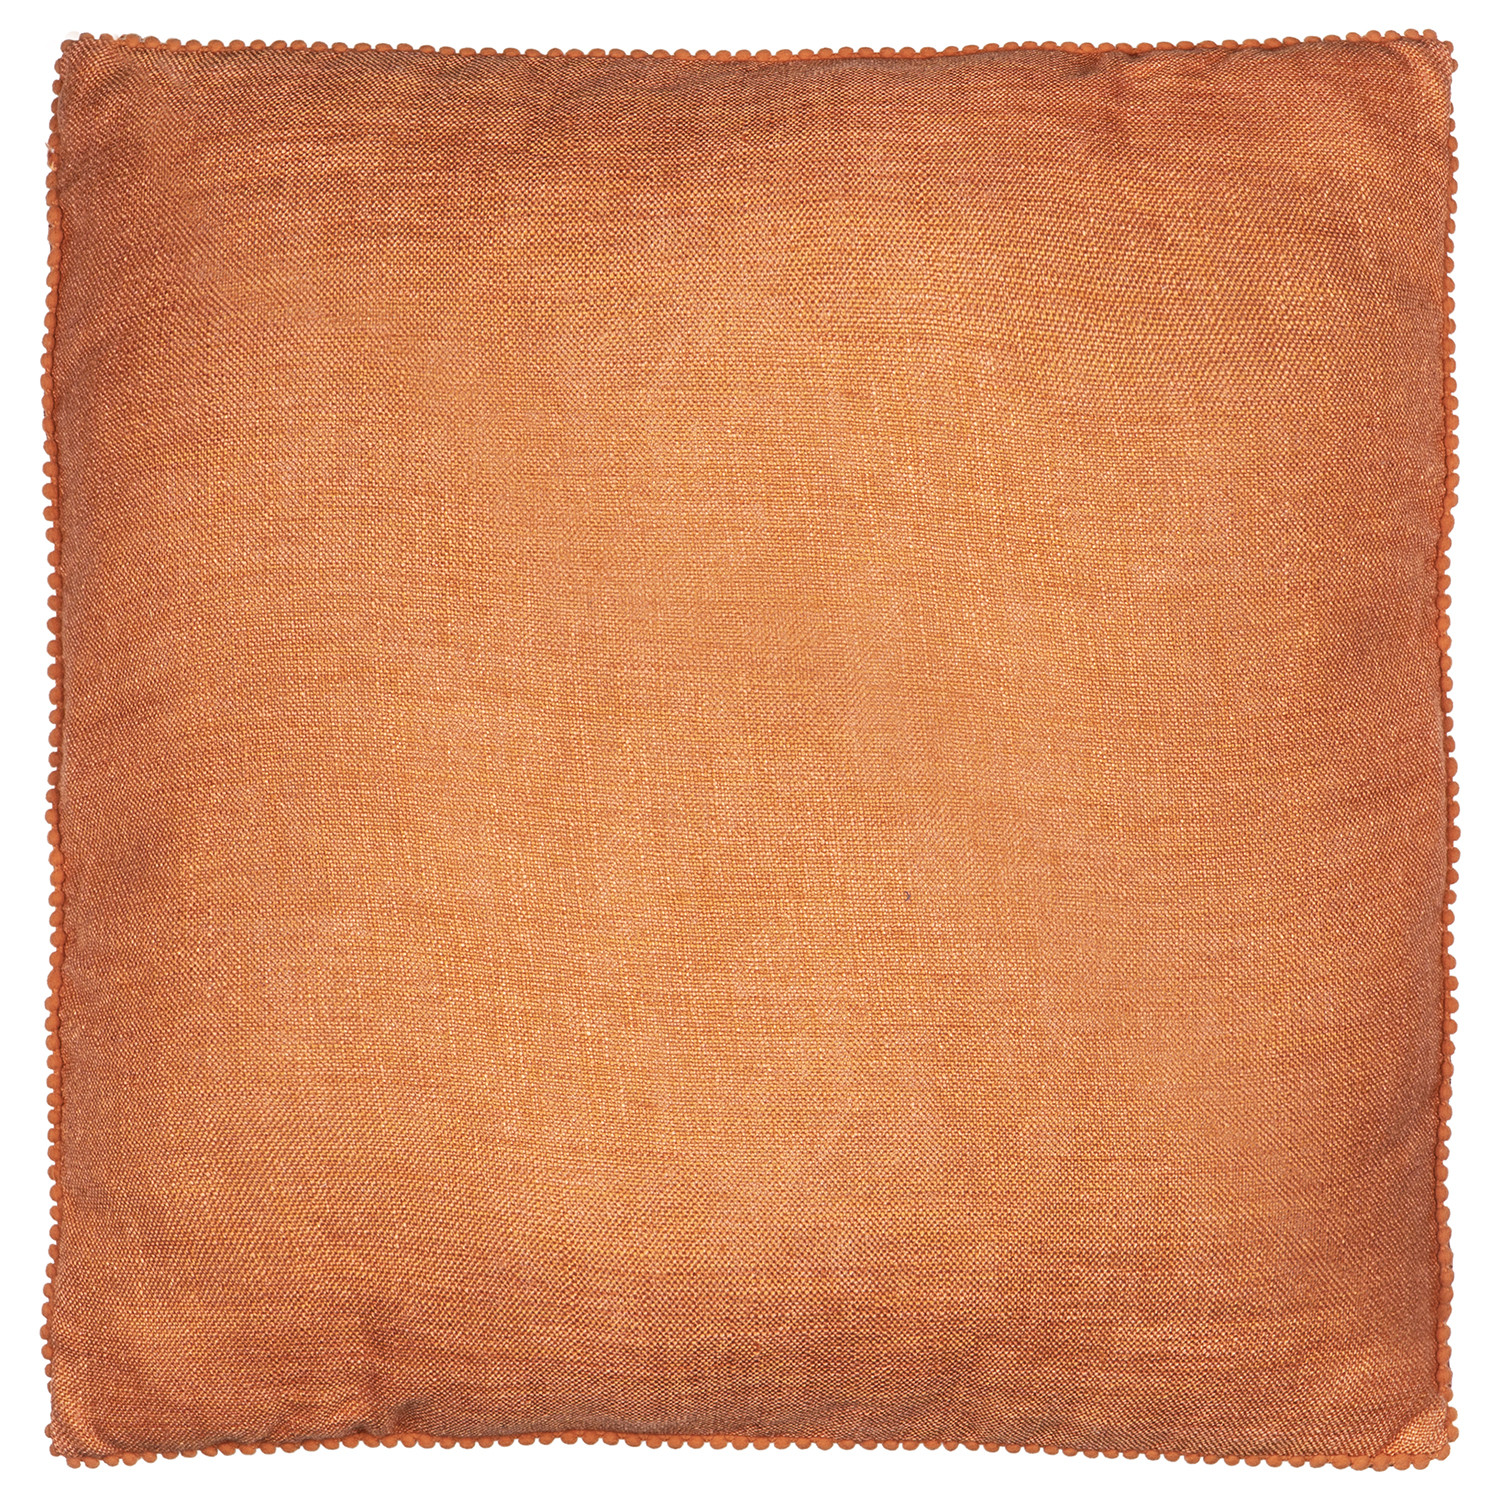 Divante Chiltern Marmalade Pom Pom Cushion 45 x 45cm Image